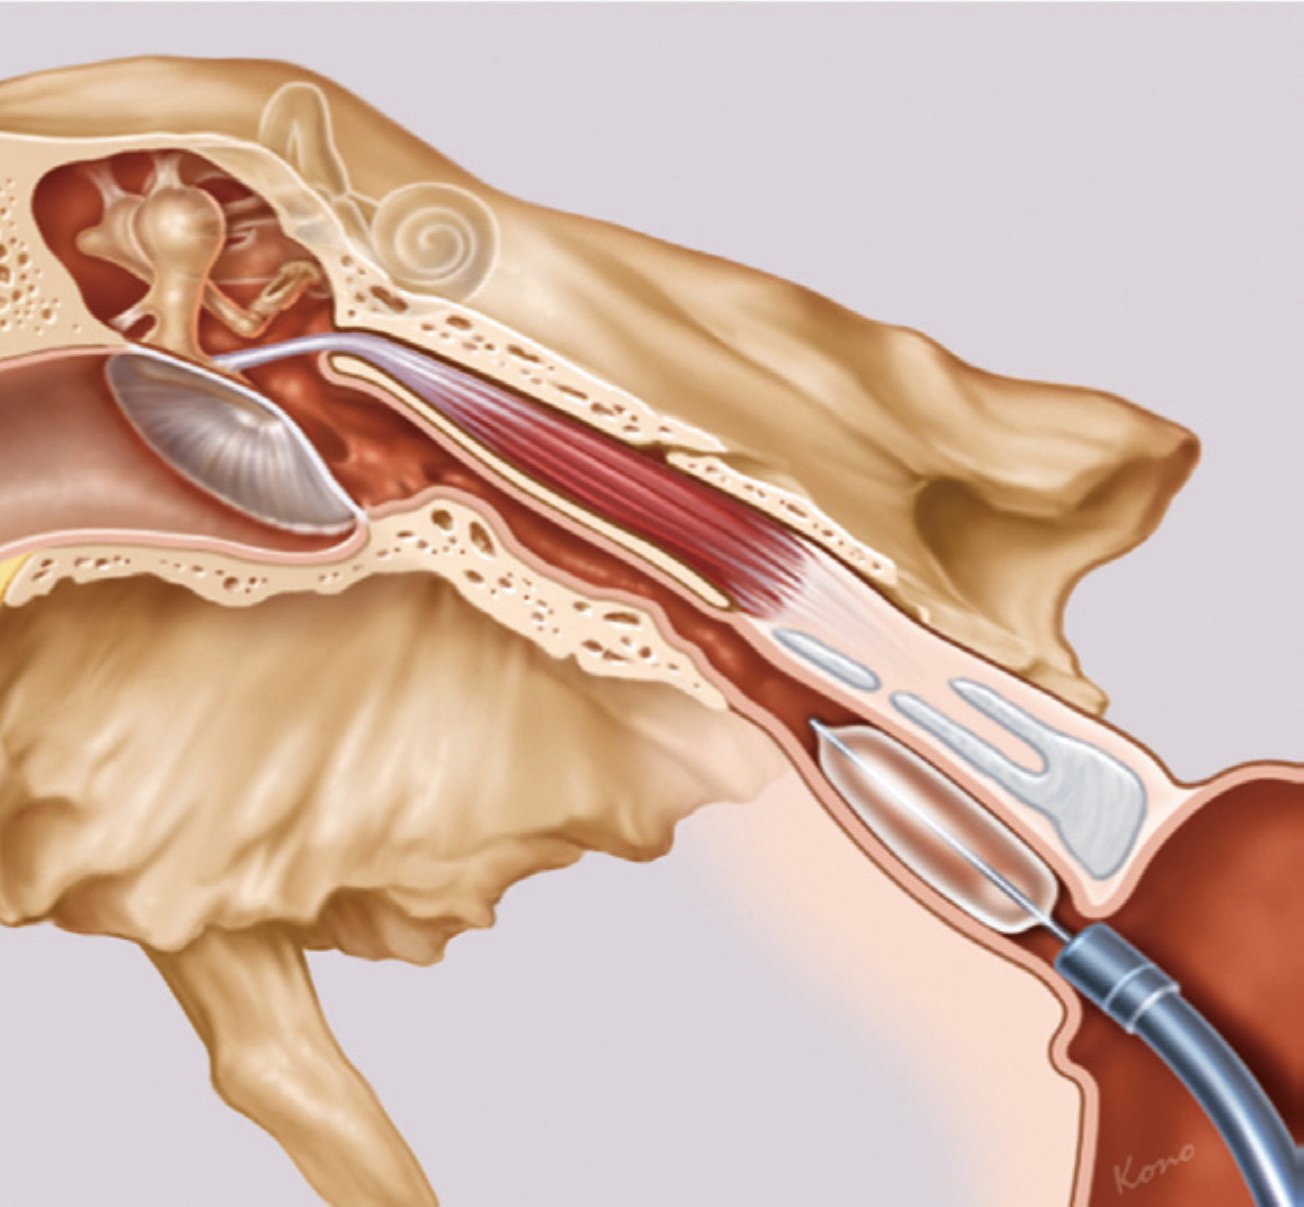 耳咽管氣球擴張成型手術02圖片來源SPIGGLEandTHEIS